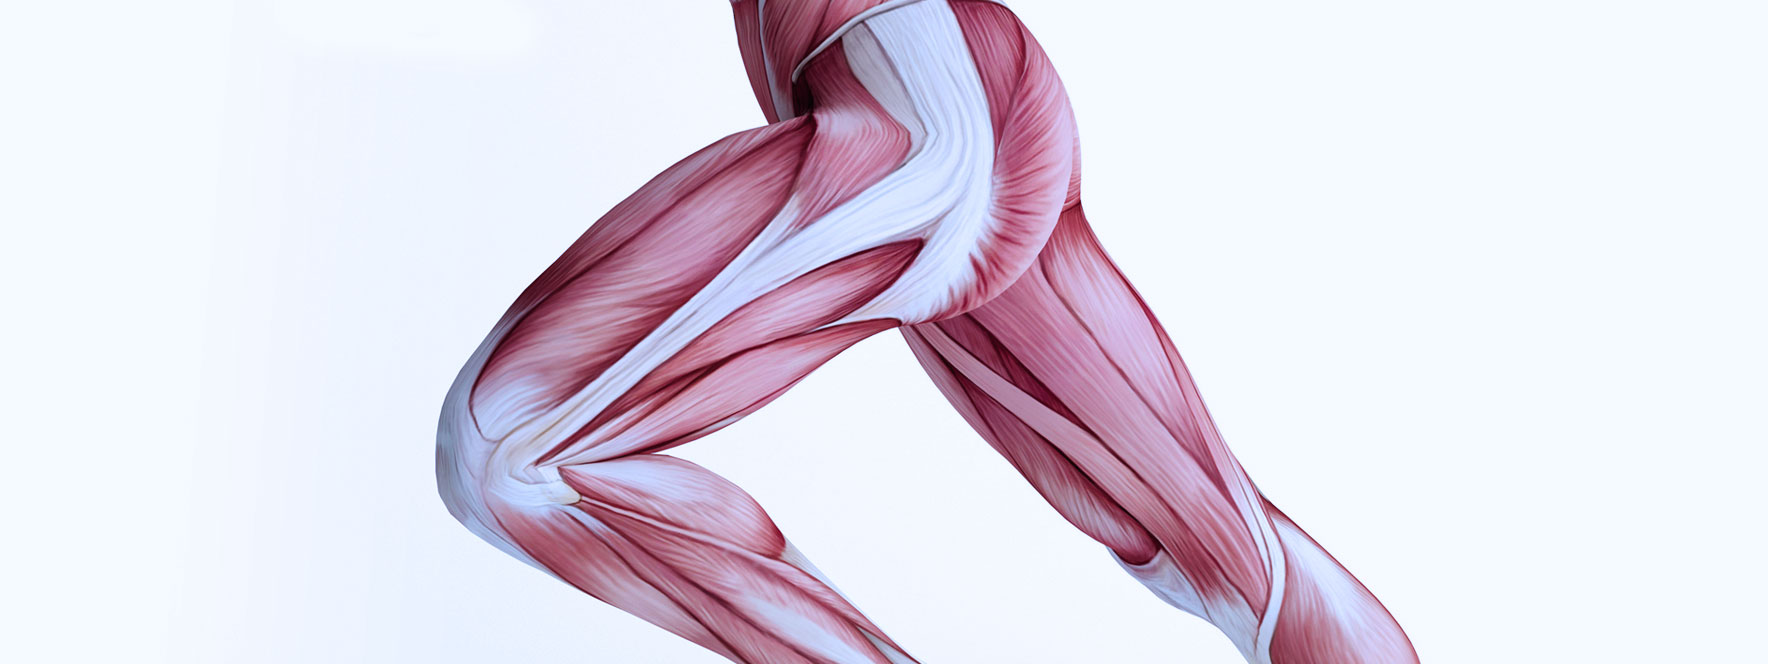 Anatomie des muscles